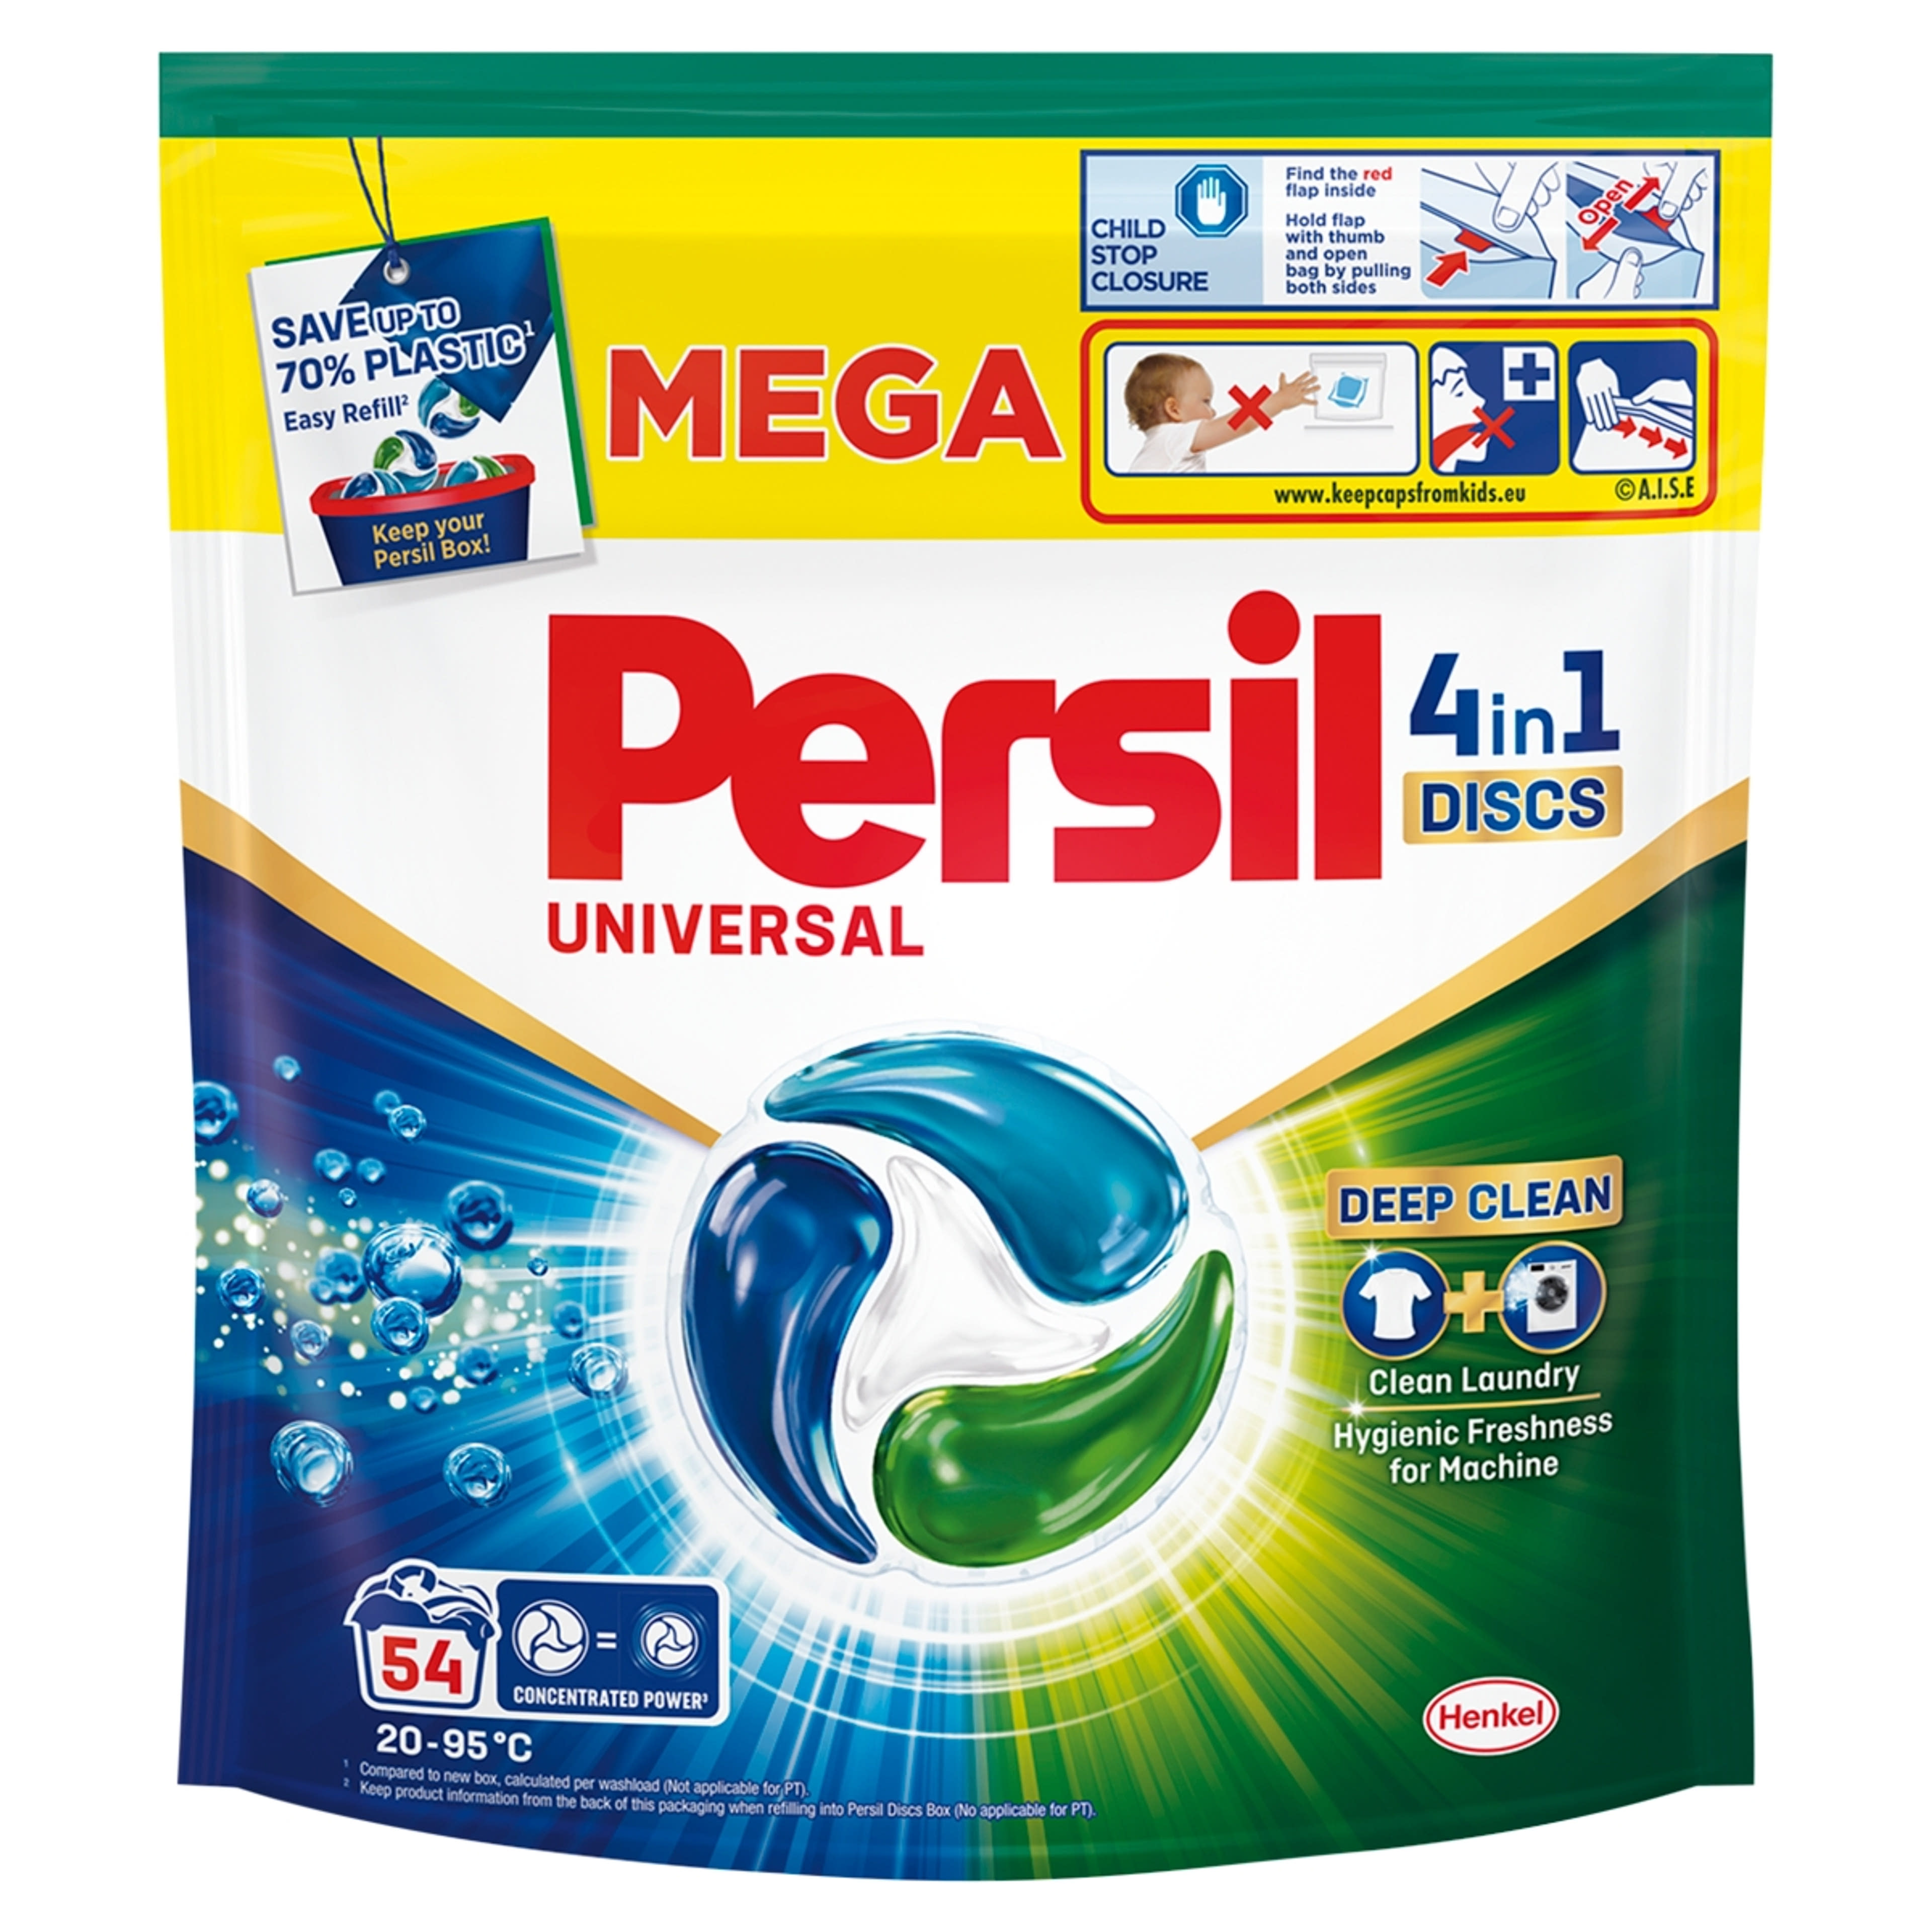 Persil Discs Universal mosókapszula 54 mosás - 54 db